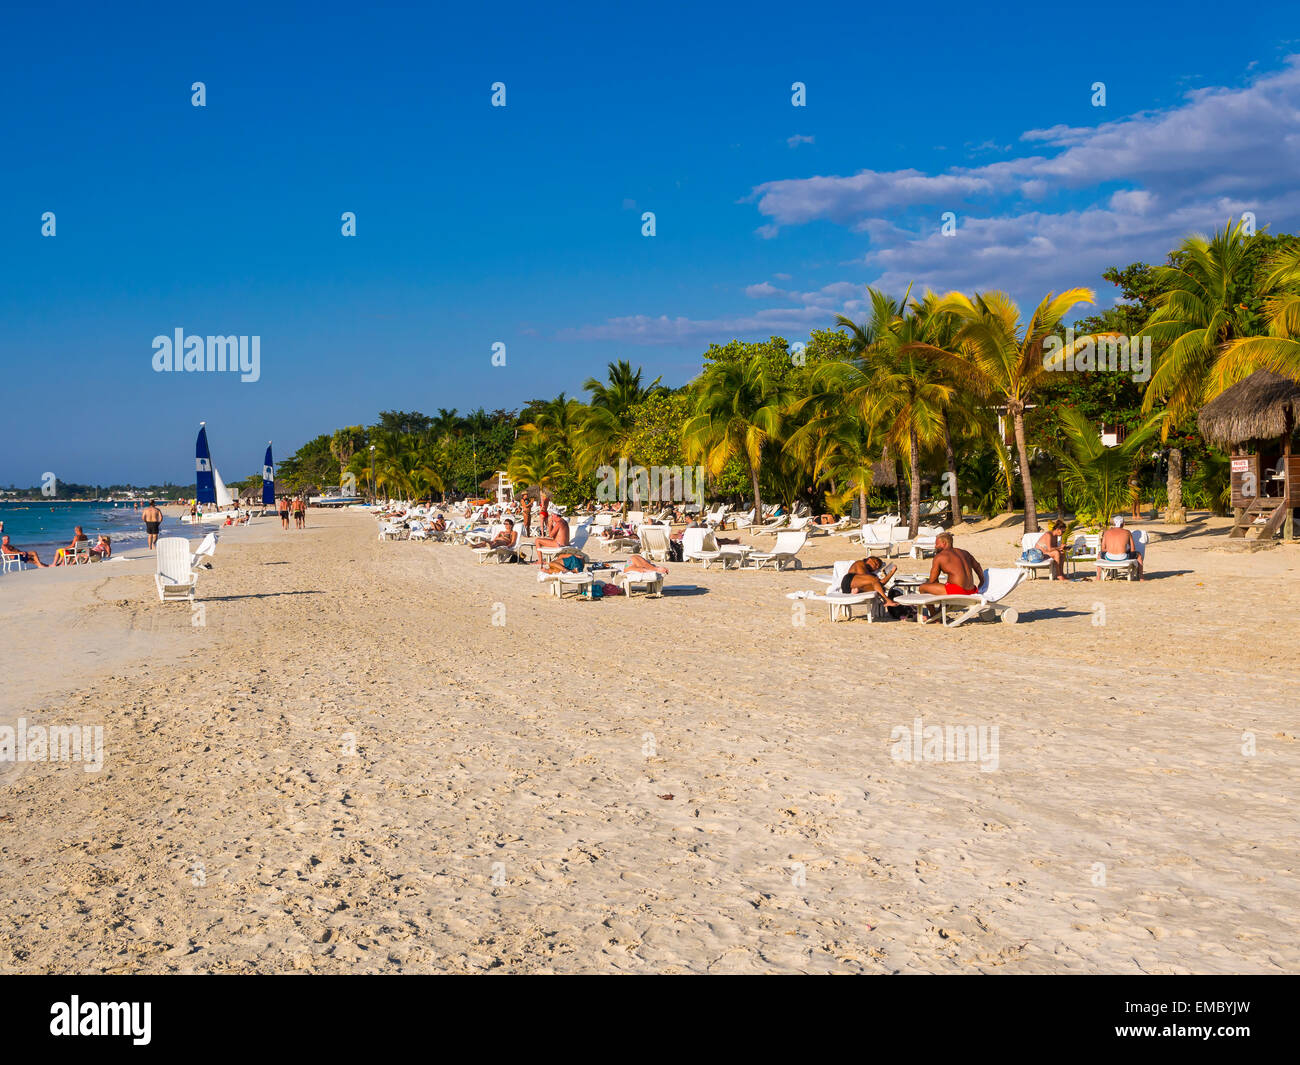 De la Jamaïque, Negril, en vue d'une plage de sable avec des touristes de soleil Banque D'Images